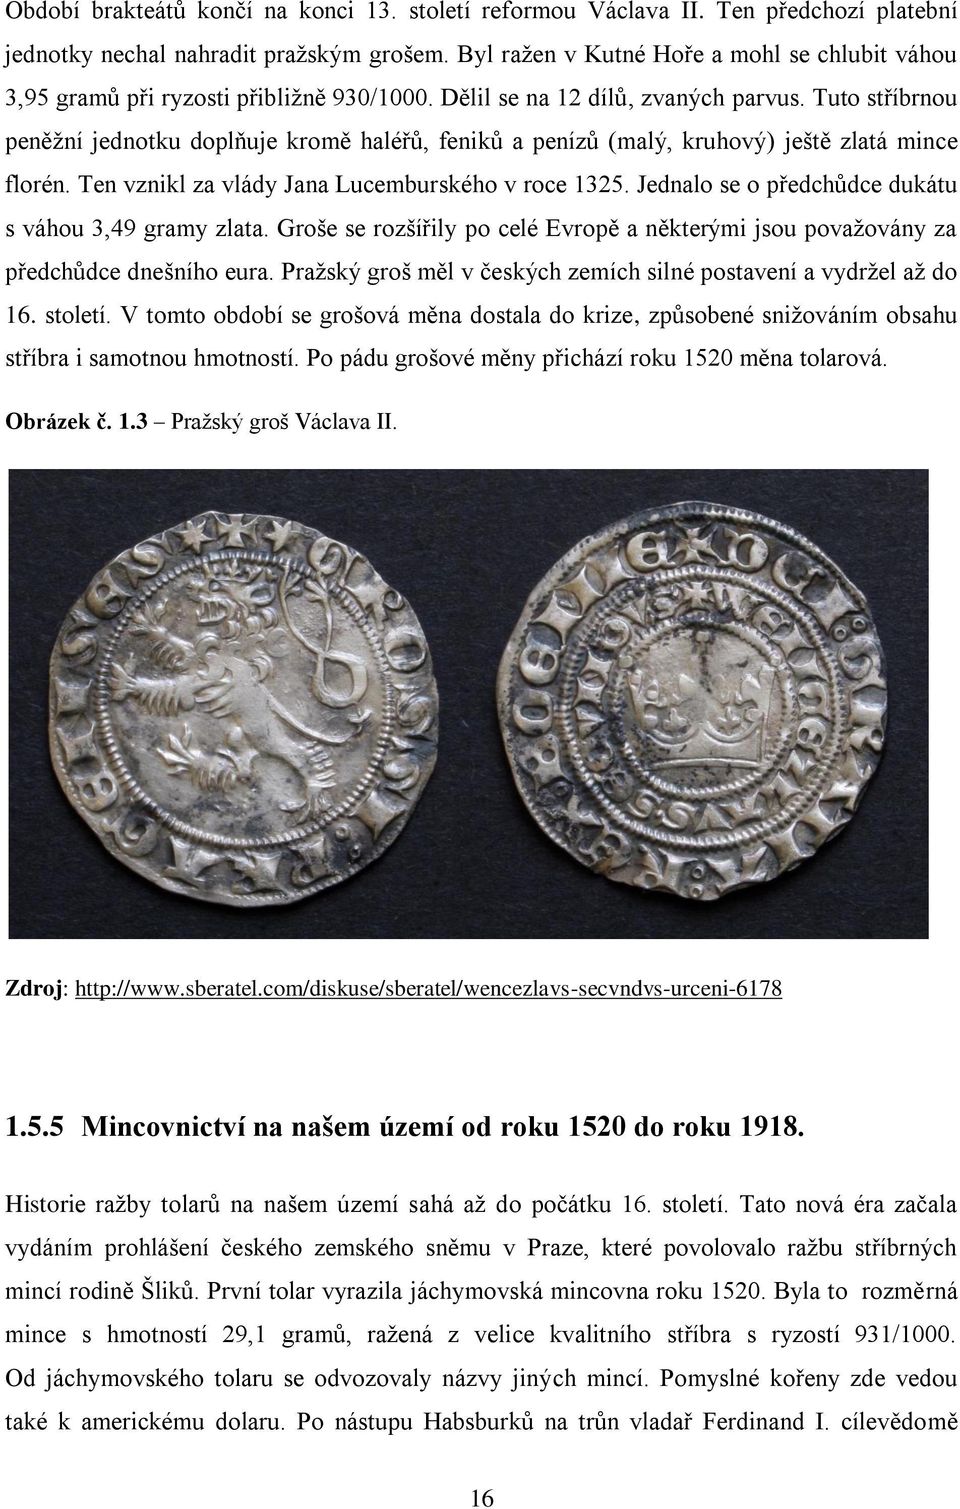 Tuto stříbrnou peněžní jednotku doplňuje kromě haléřů, feniků a penízů (malý, kruhový) ještě zlatá mince florén. Ten vznikl za vlády Jana Lucemburského v roce 1325.